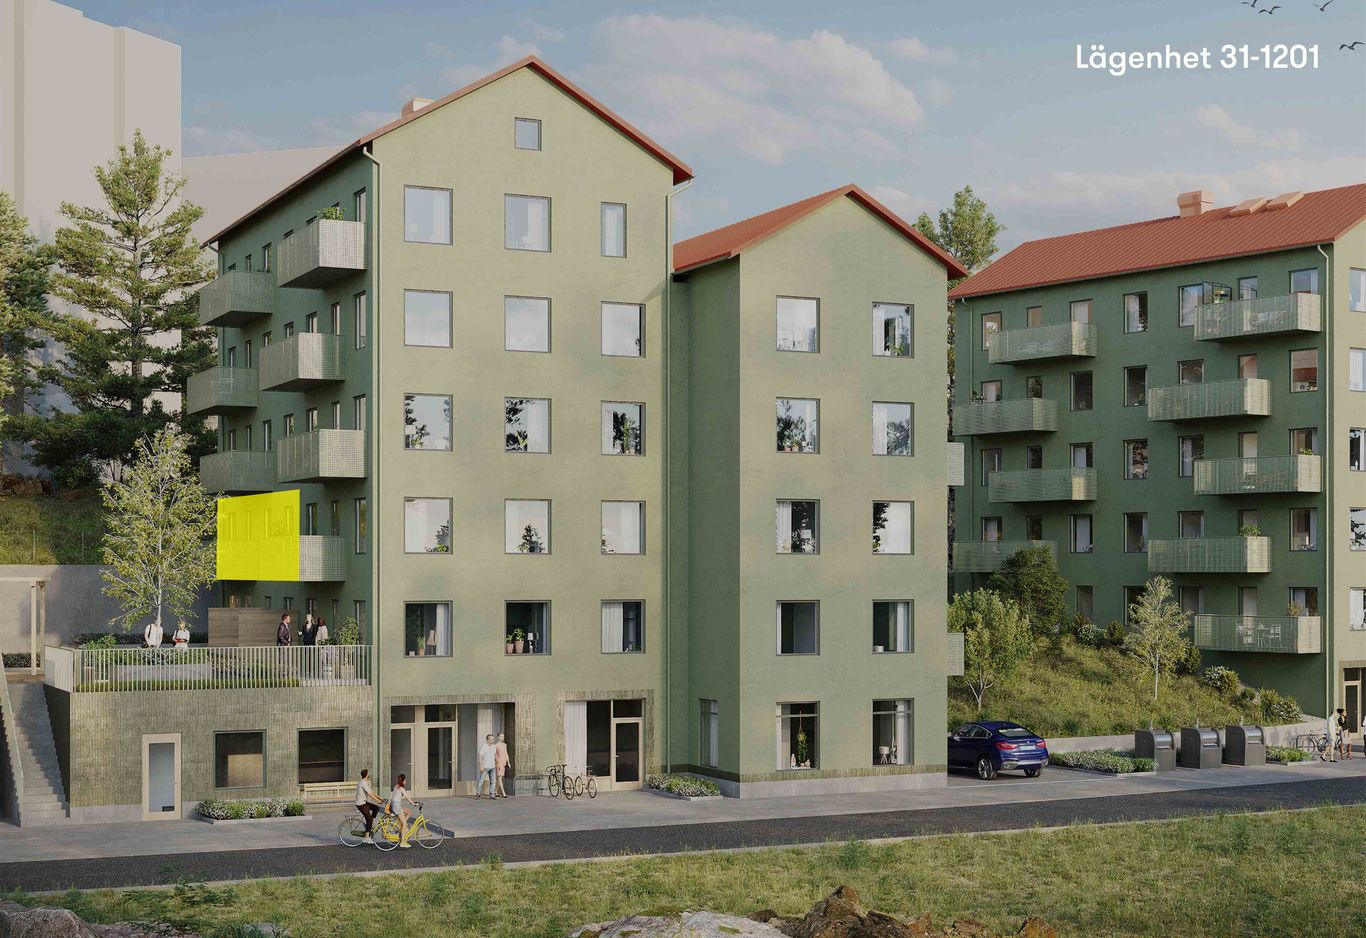 Fasadbild med lägenhet 31-1201 markerat i gult